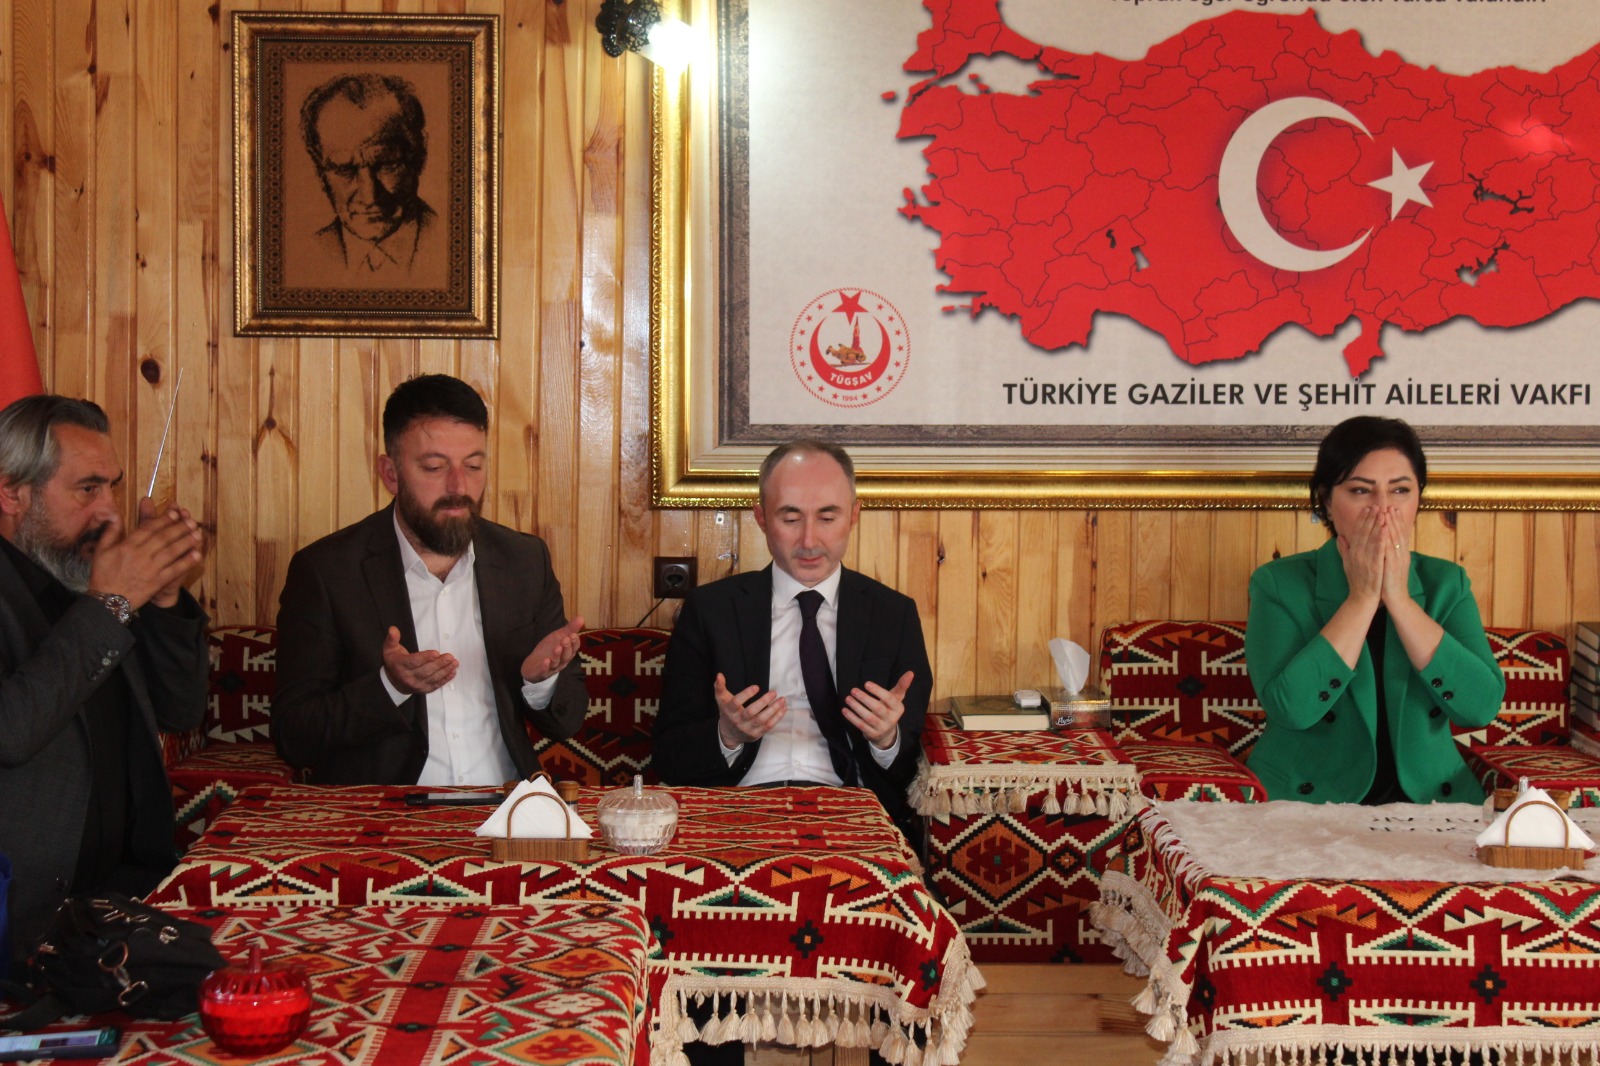 MHP Altındağ İlçe Başkanı Emin Sıtkı Aktaş, MHP ikinci bölge milletvekili adayları Nevin Taşlıçay ve Yusuf Tanık  ile MHP teşkilat üyeleri Vakfımızı ziyaret ettiler.  Nezaket ziyaretleri için kıymetli misafirlerimize teşekkür ederiz.